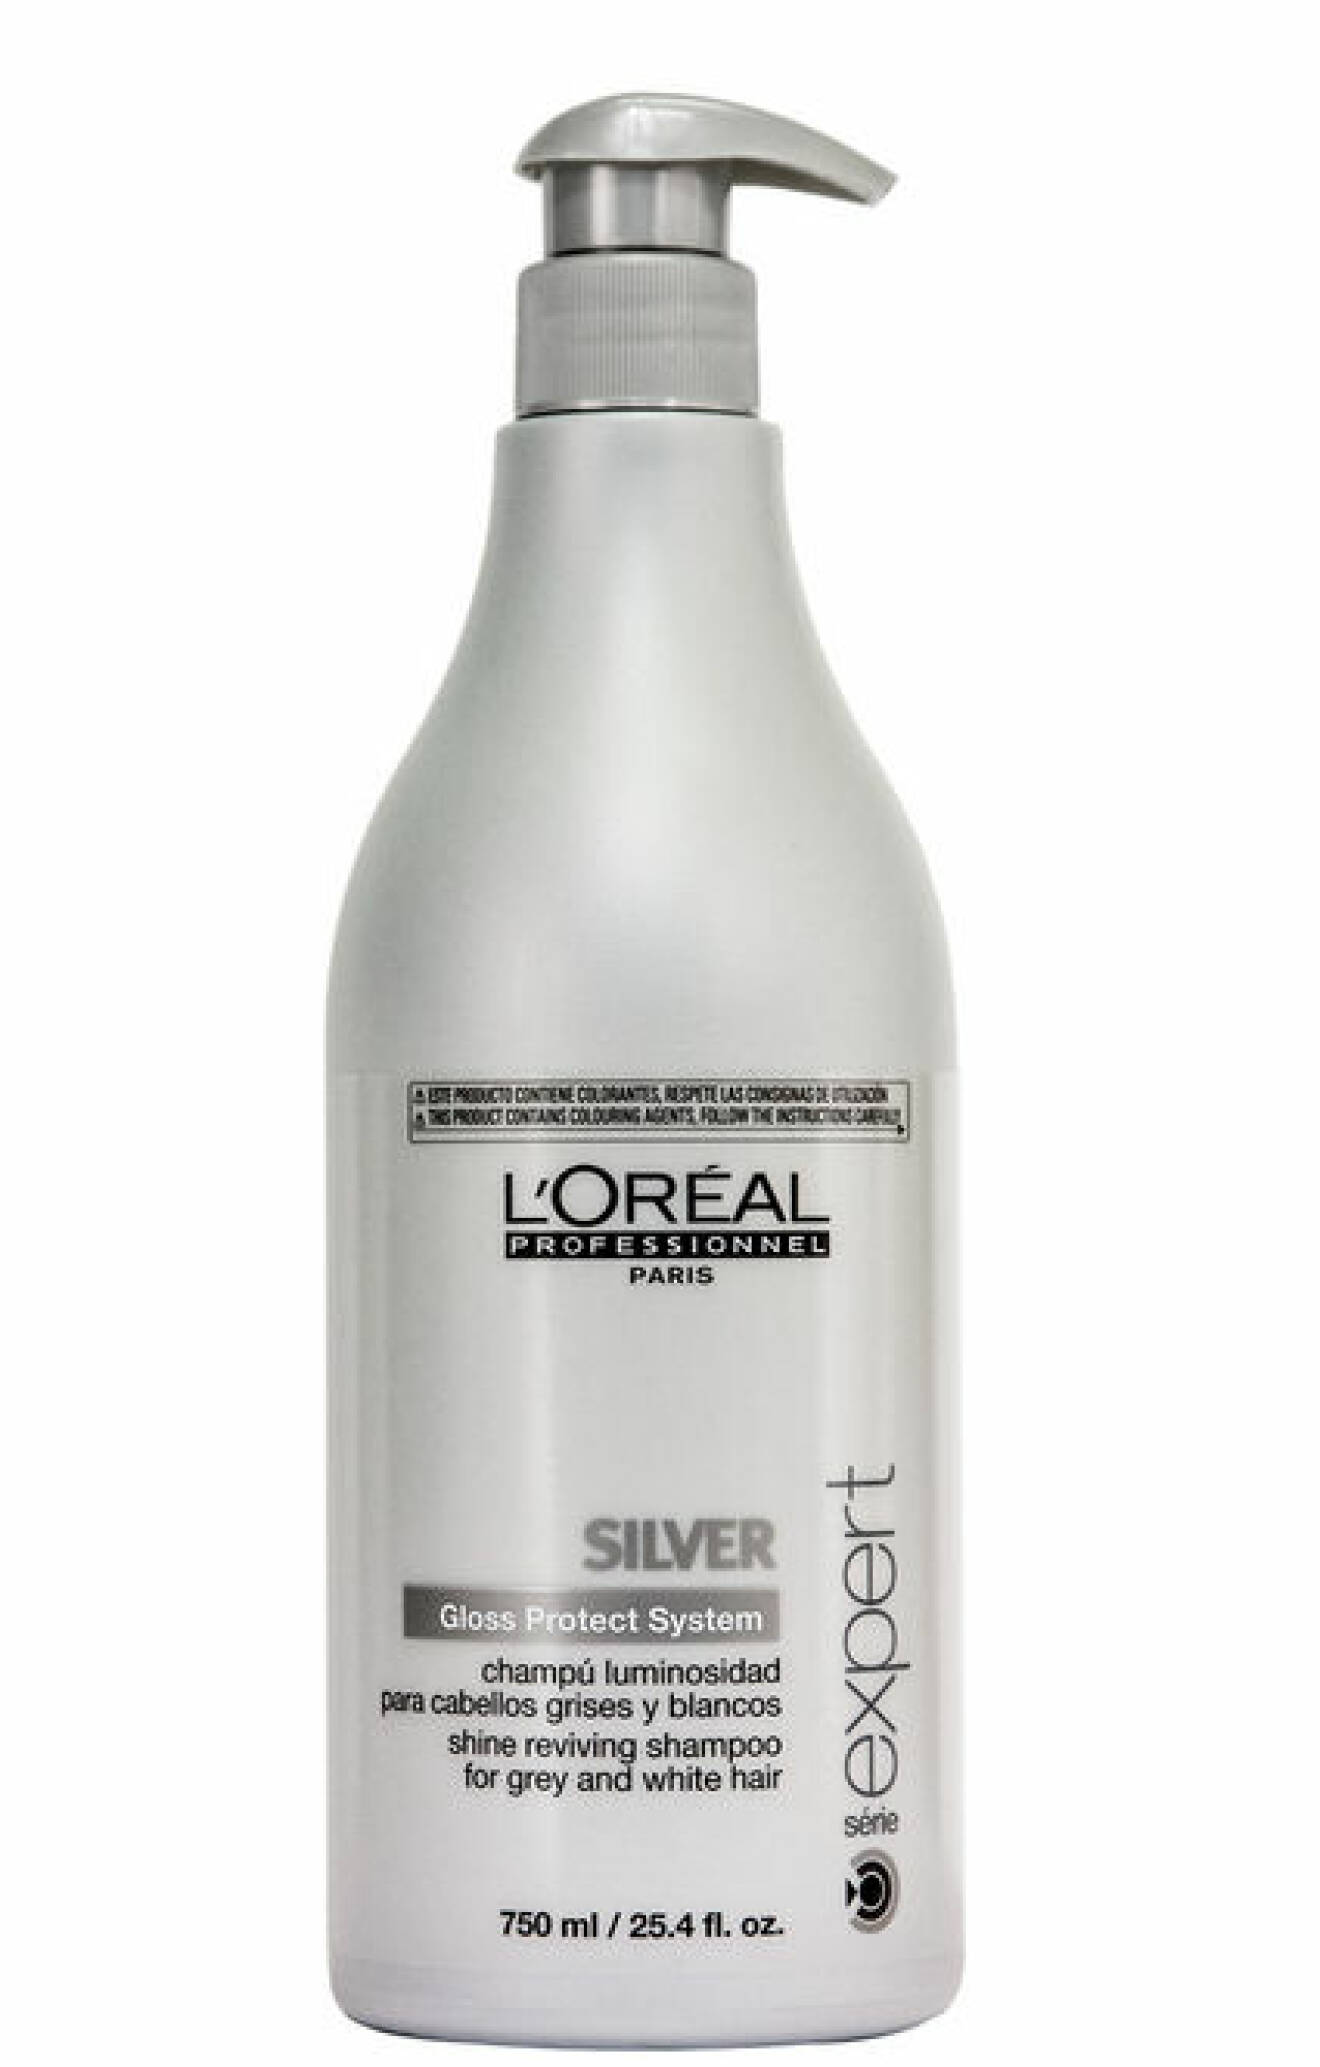 L'Oréal silverschampo